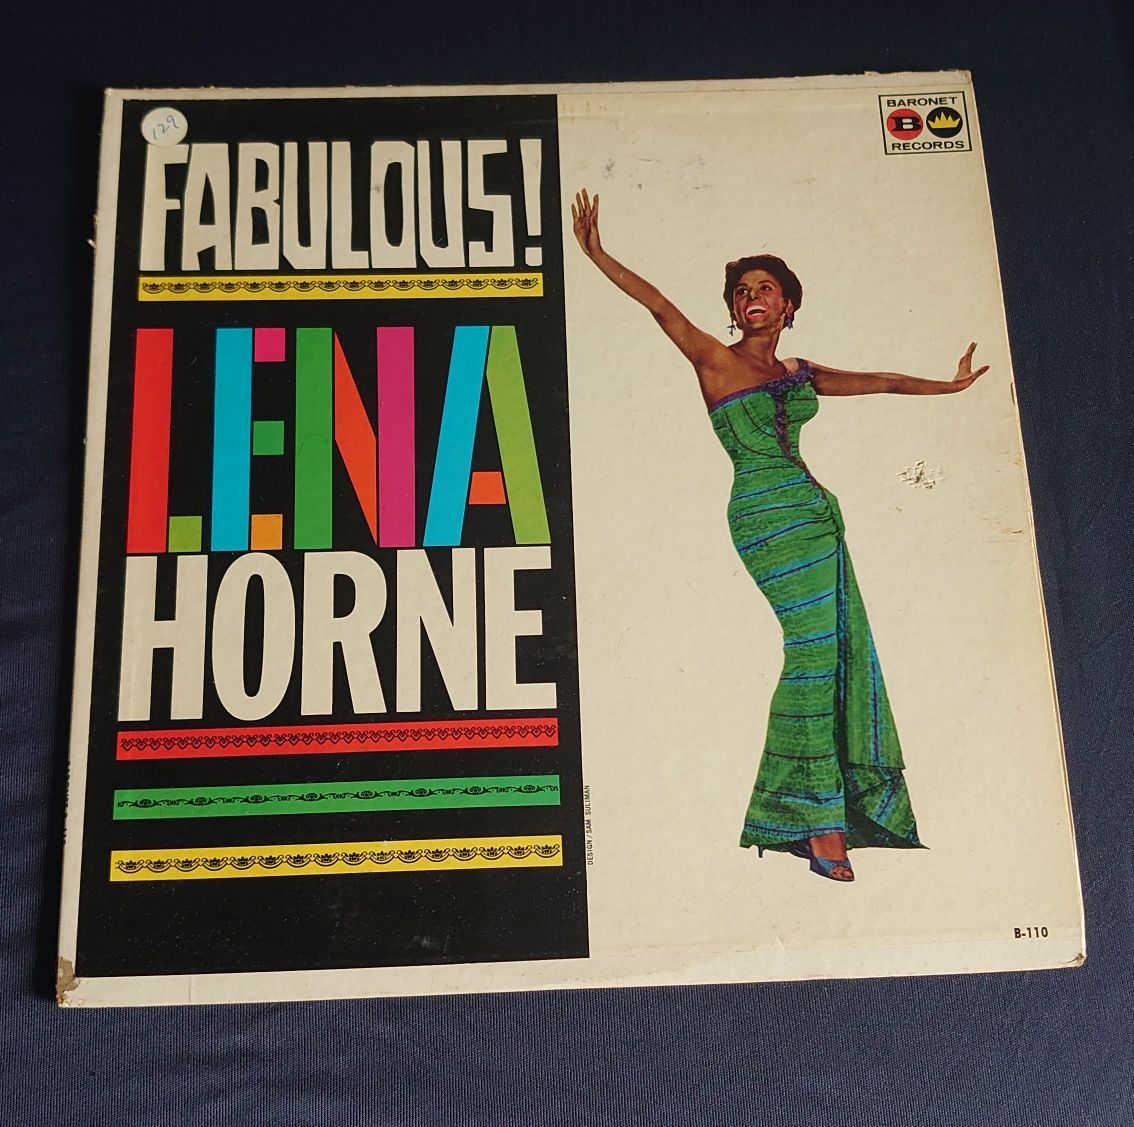 Lena Horne Fabulous! LP Vinyl USA press winyl